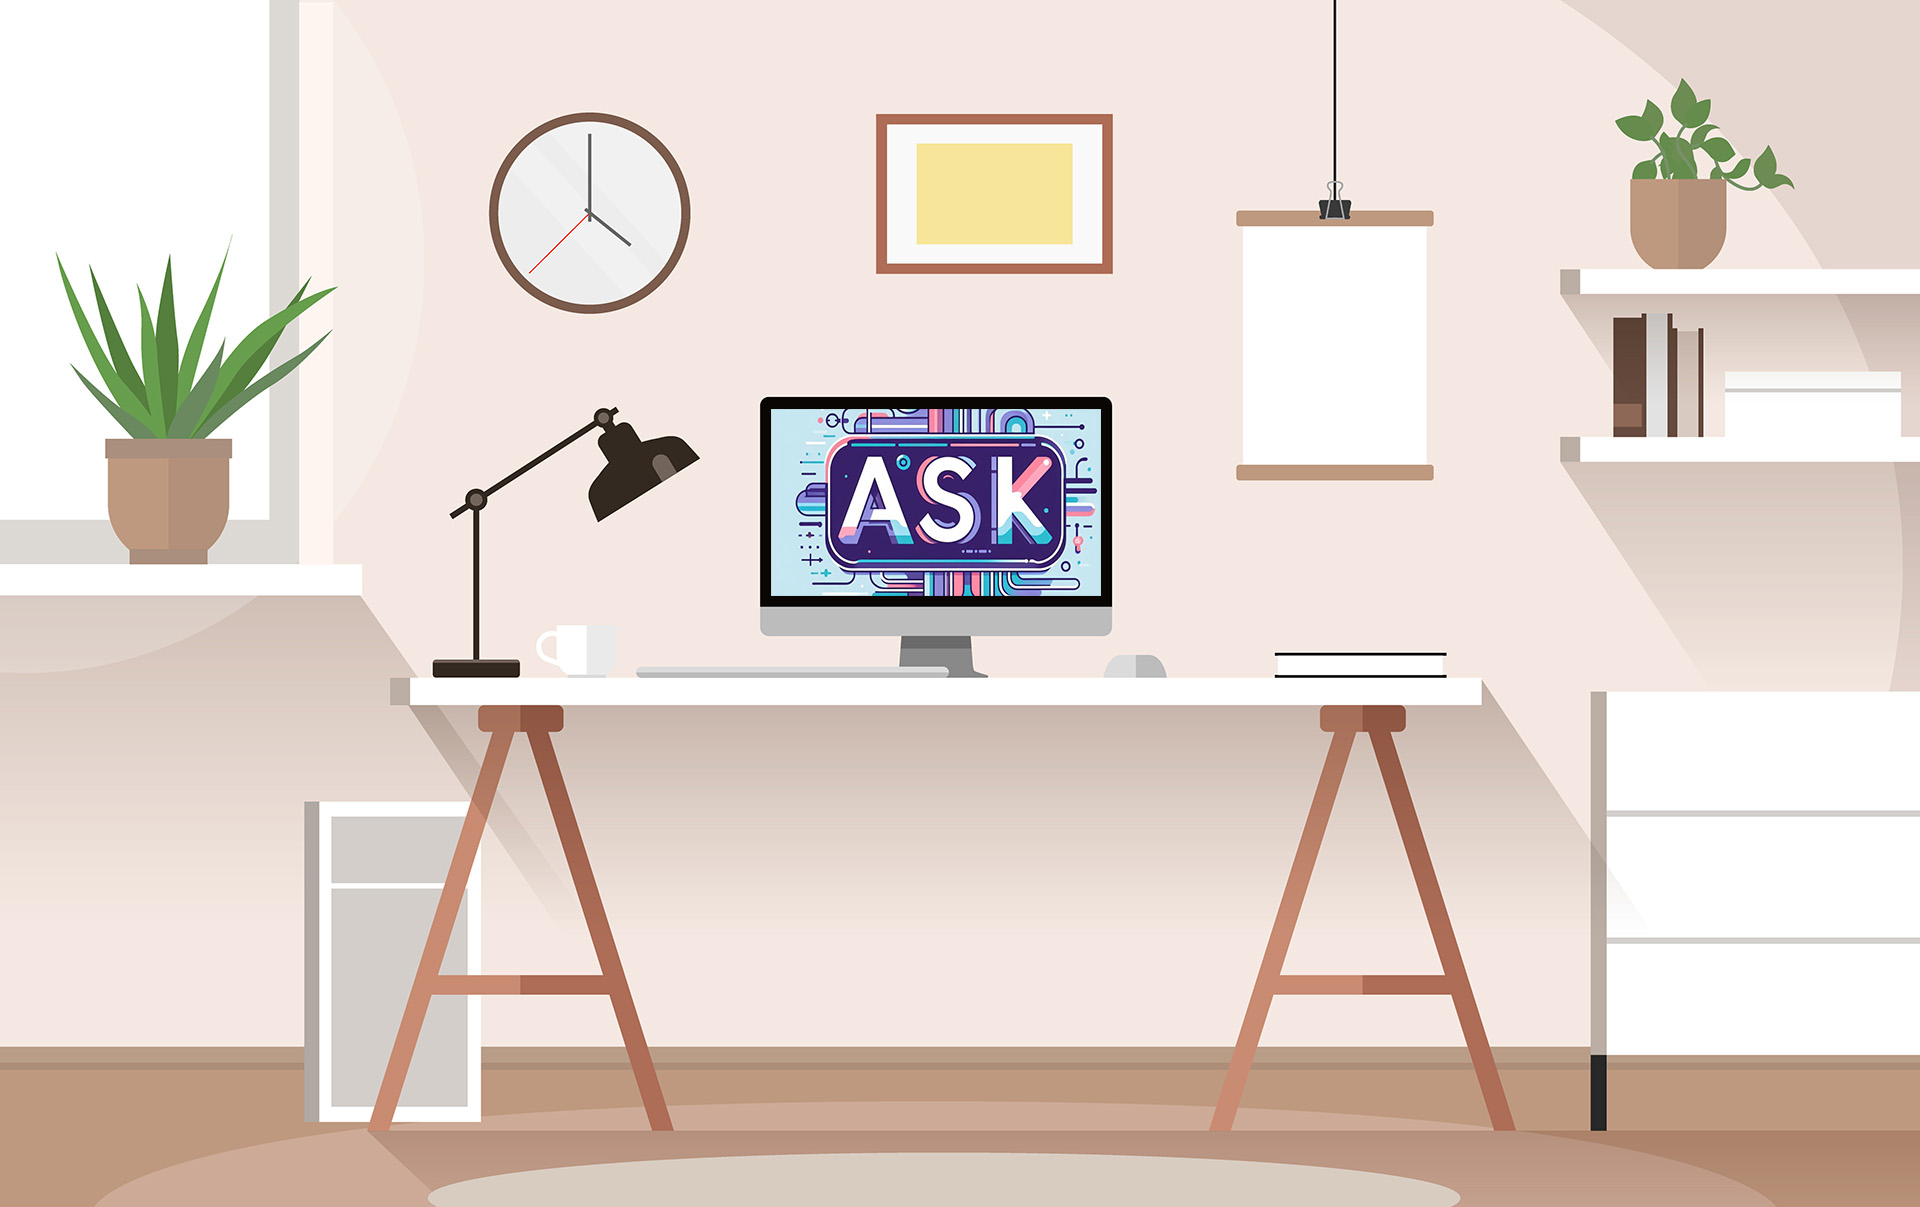 Ilustración de un espacio de trabajo en casa, con una mesa, lámpara, monitor, laptop, libreros, una ventana y una planta